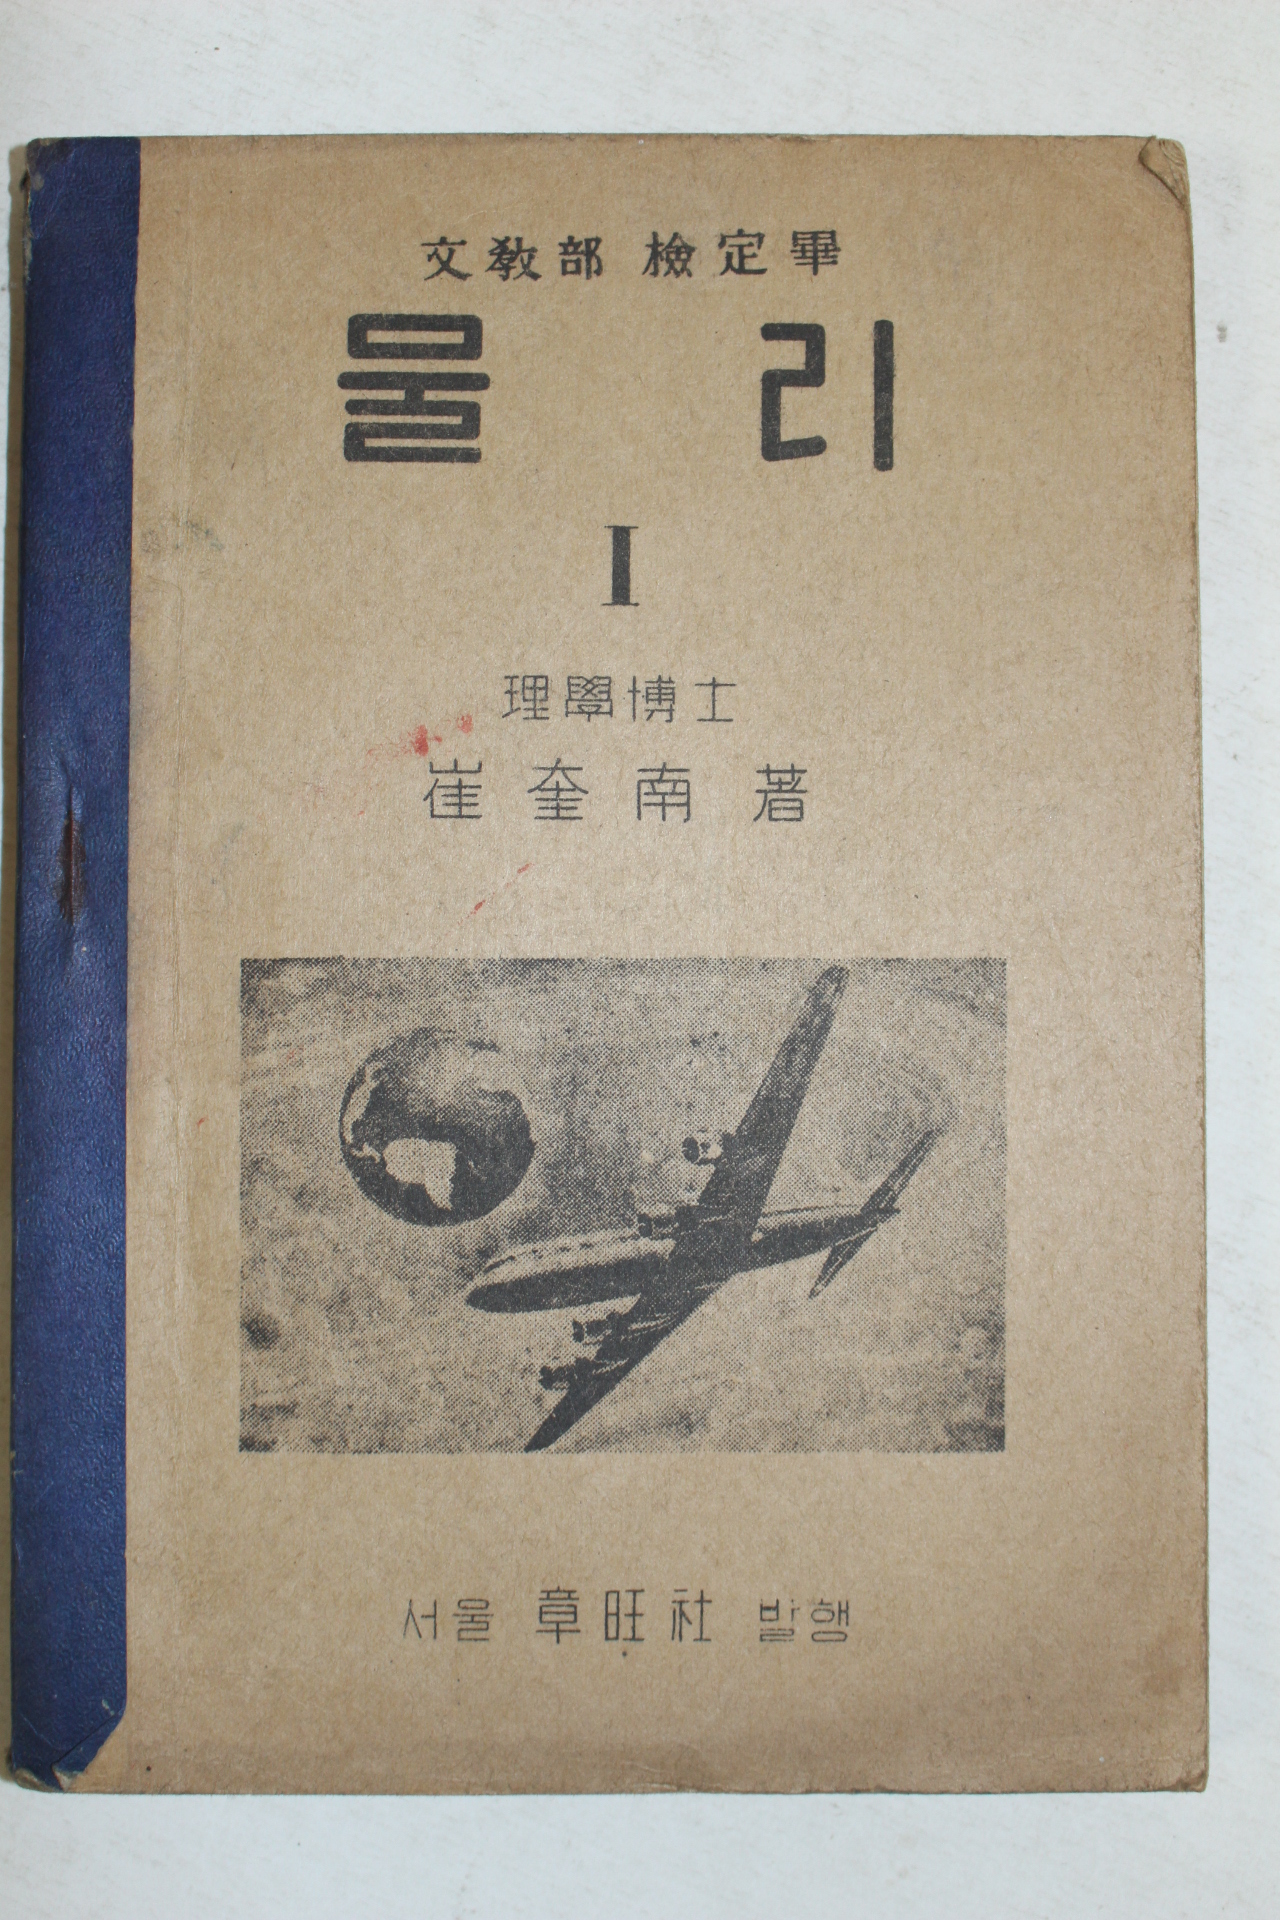 1954년 최규남(崔奎南) 물리 1